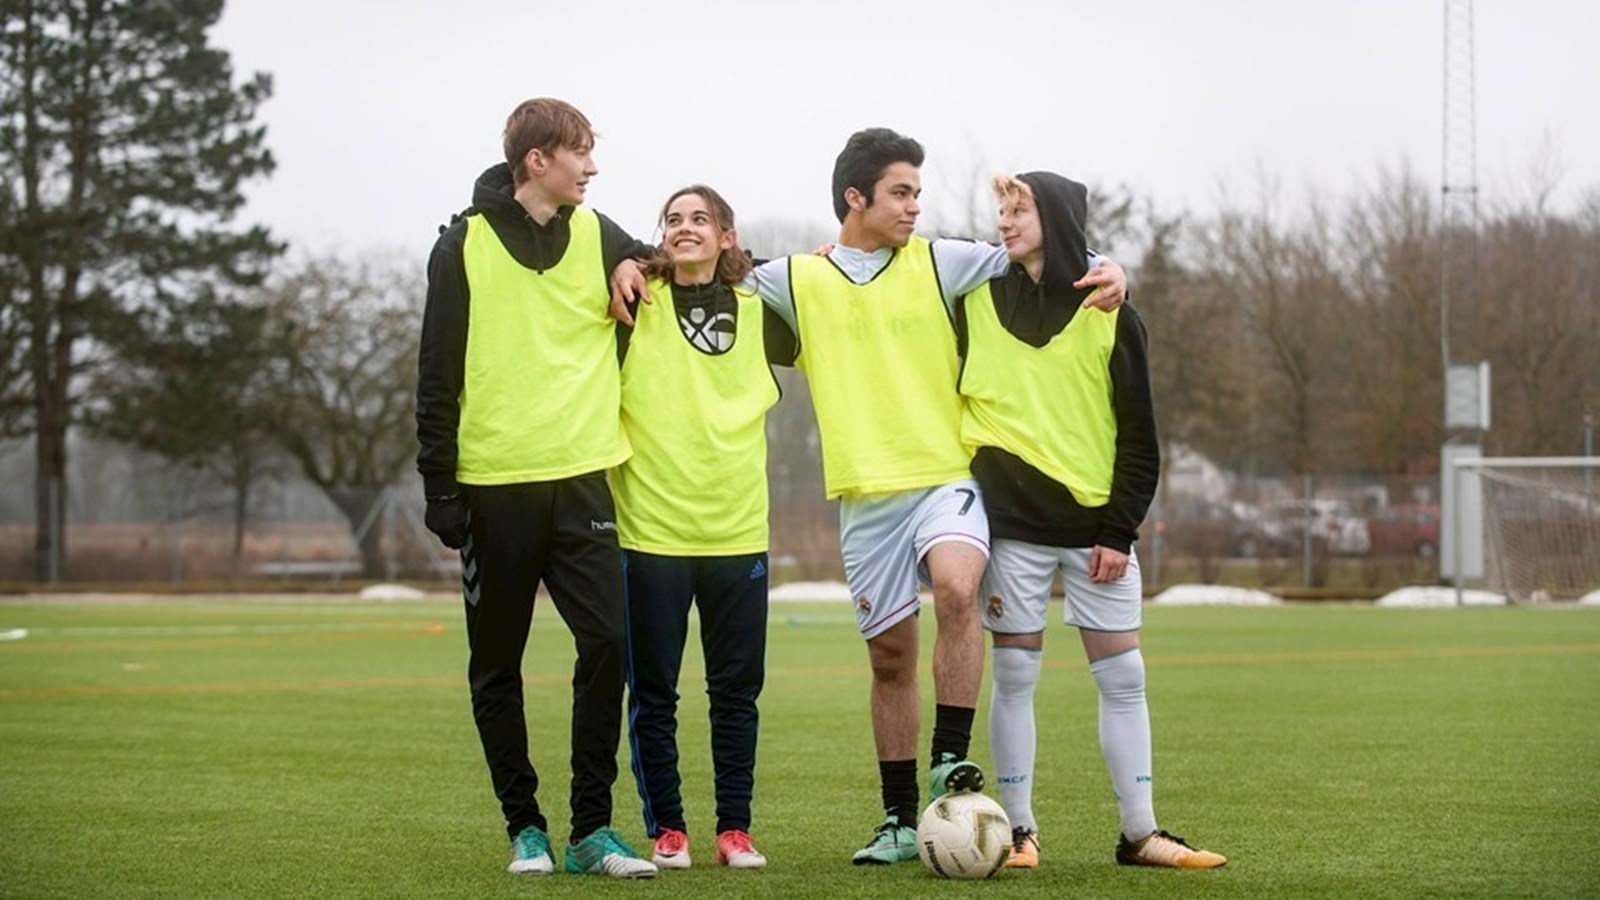 Særlig fodboldkamp bringer unge tættere på arbejdsmarkedet